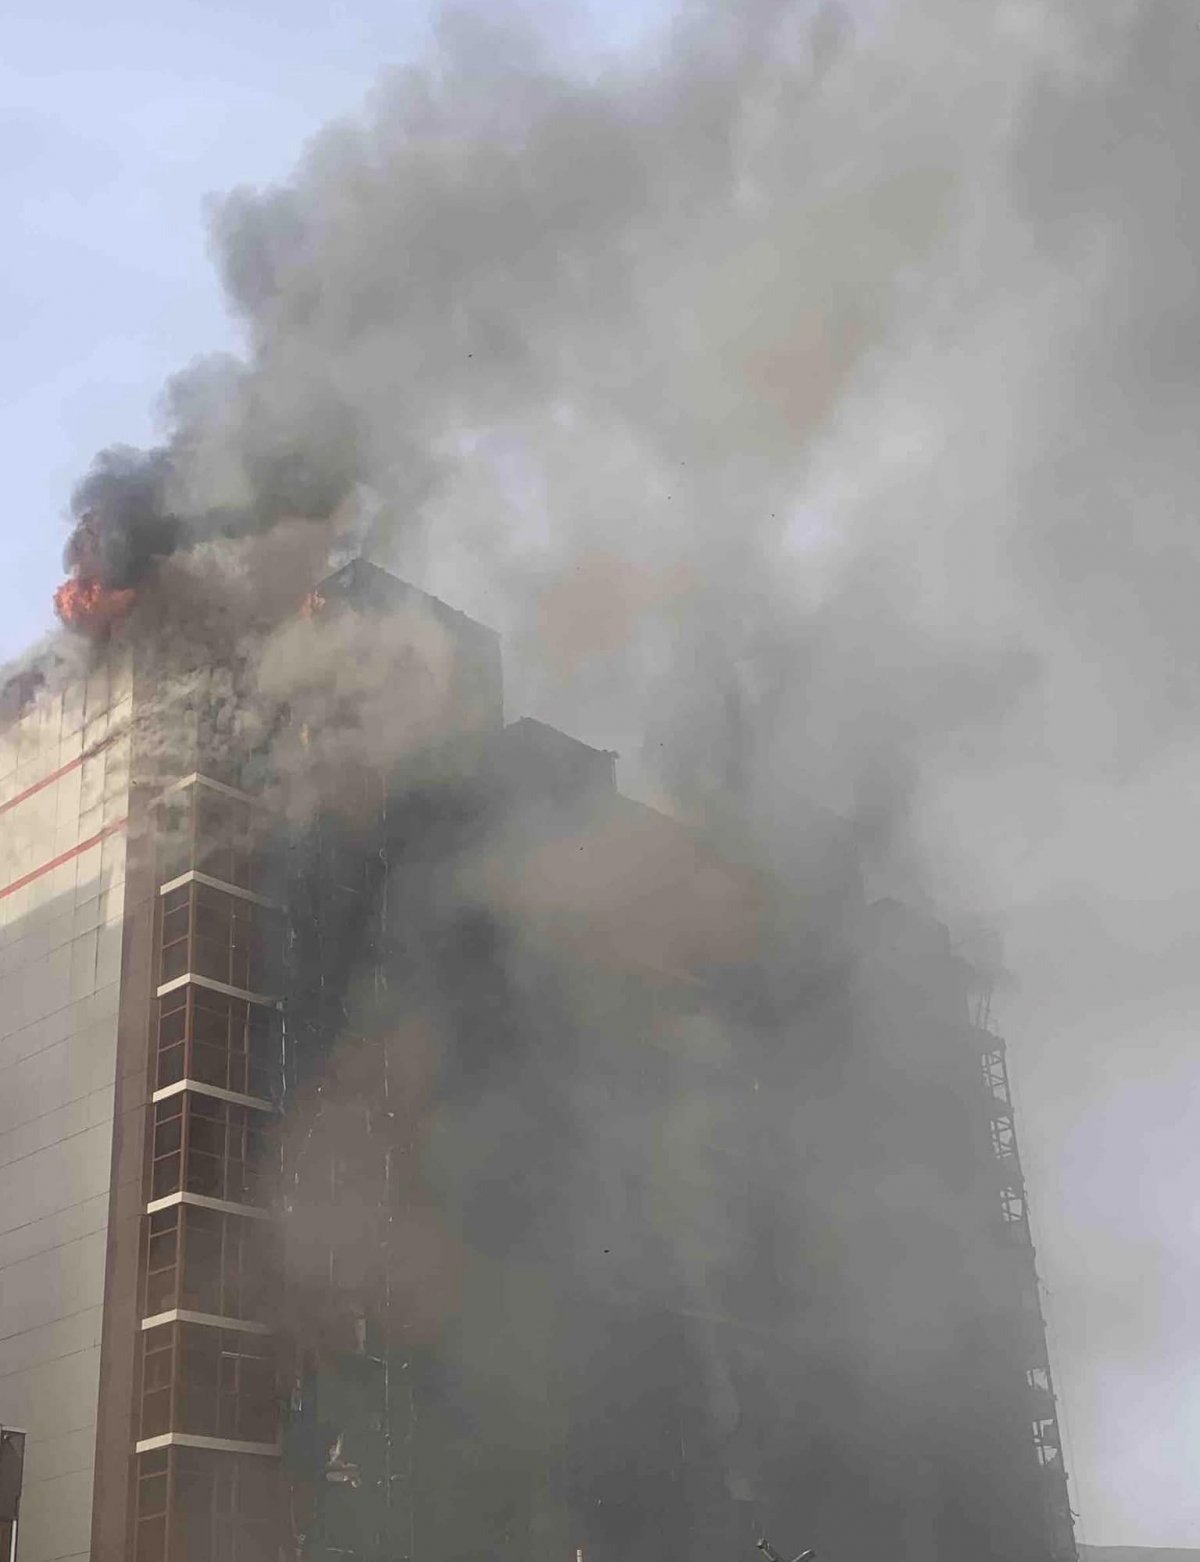 ОБЕГ:12 давхар барилгад гарсан галыг унтраахаар ажиллаж байна